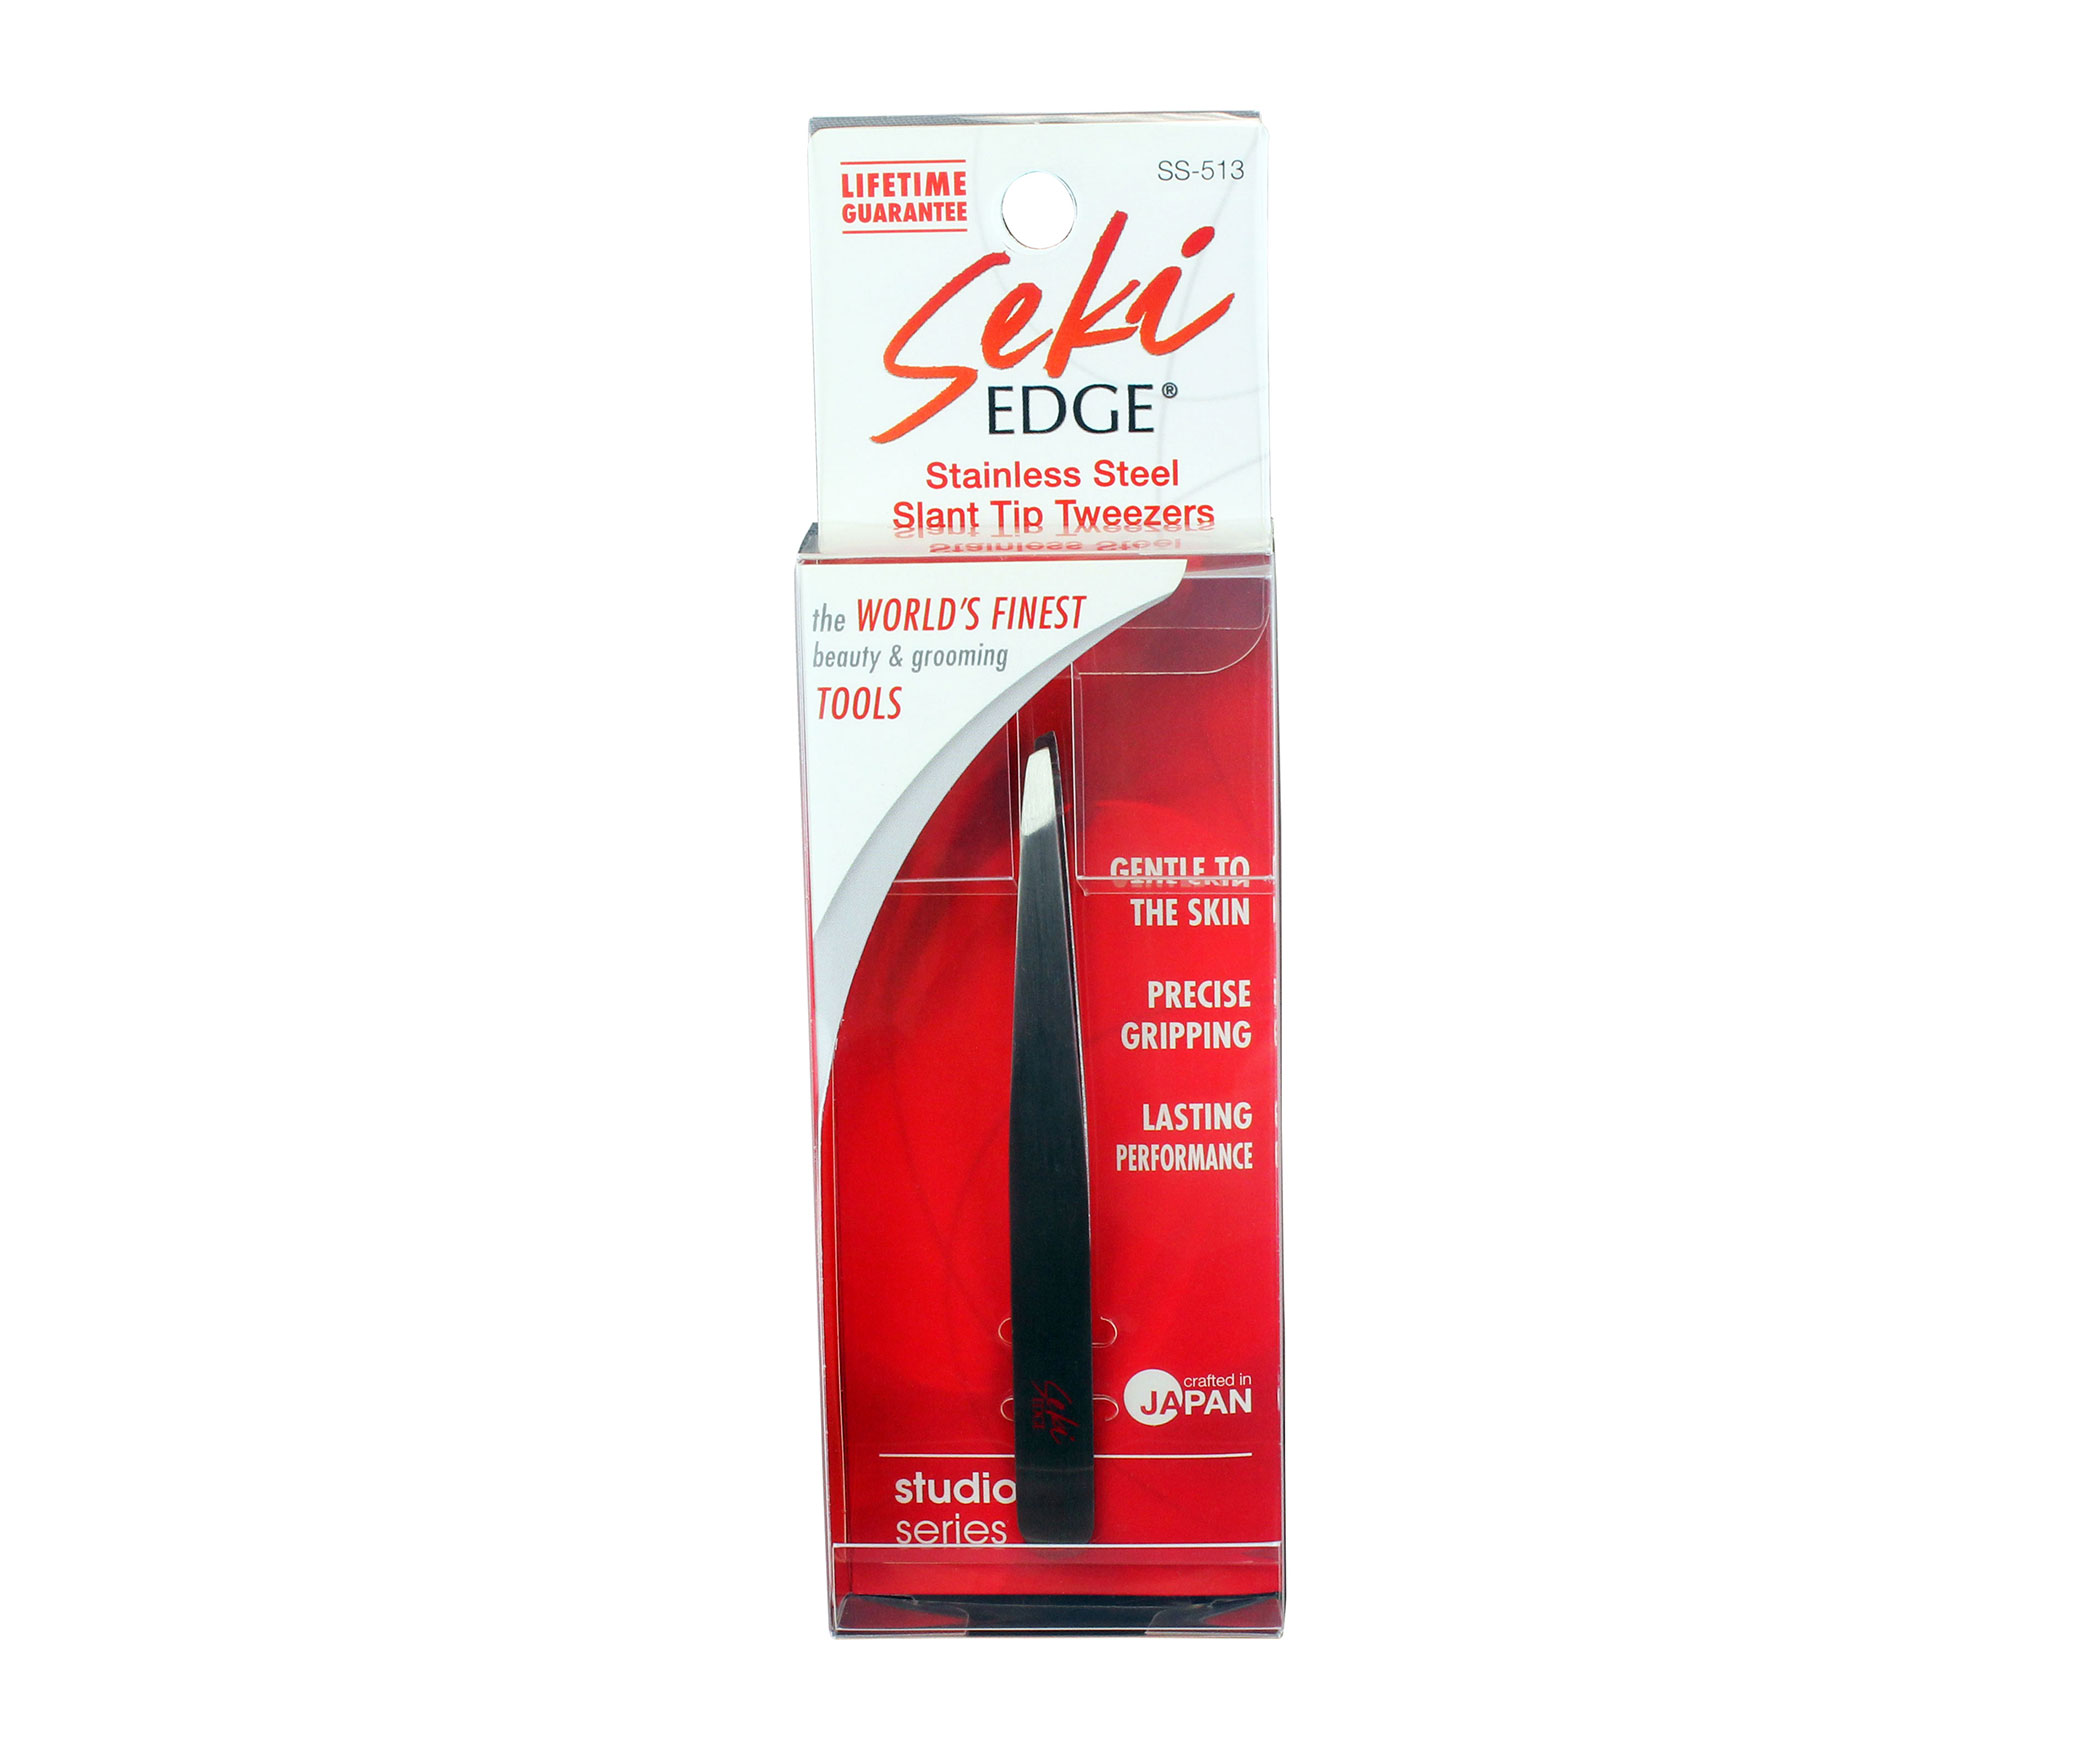 Seki Edge Stainless Steel Slant Tweezers (SS-513) package